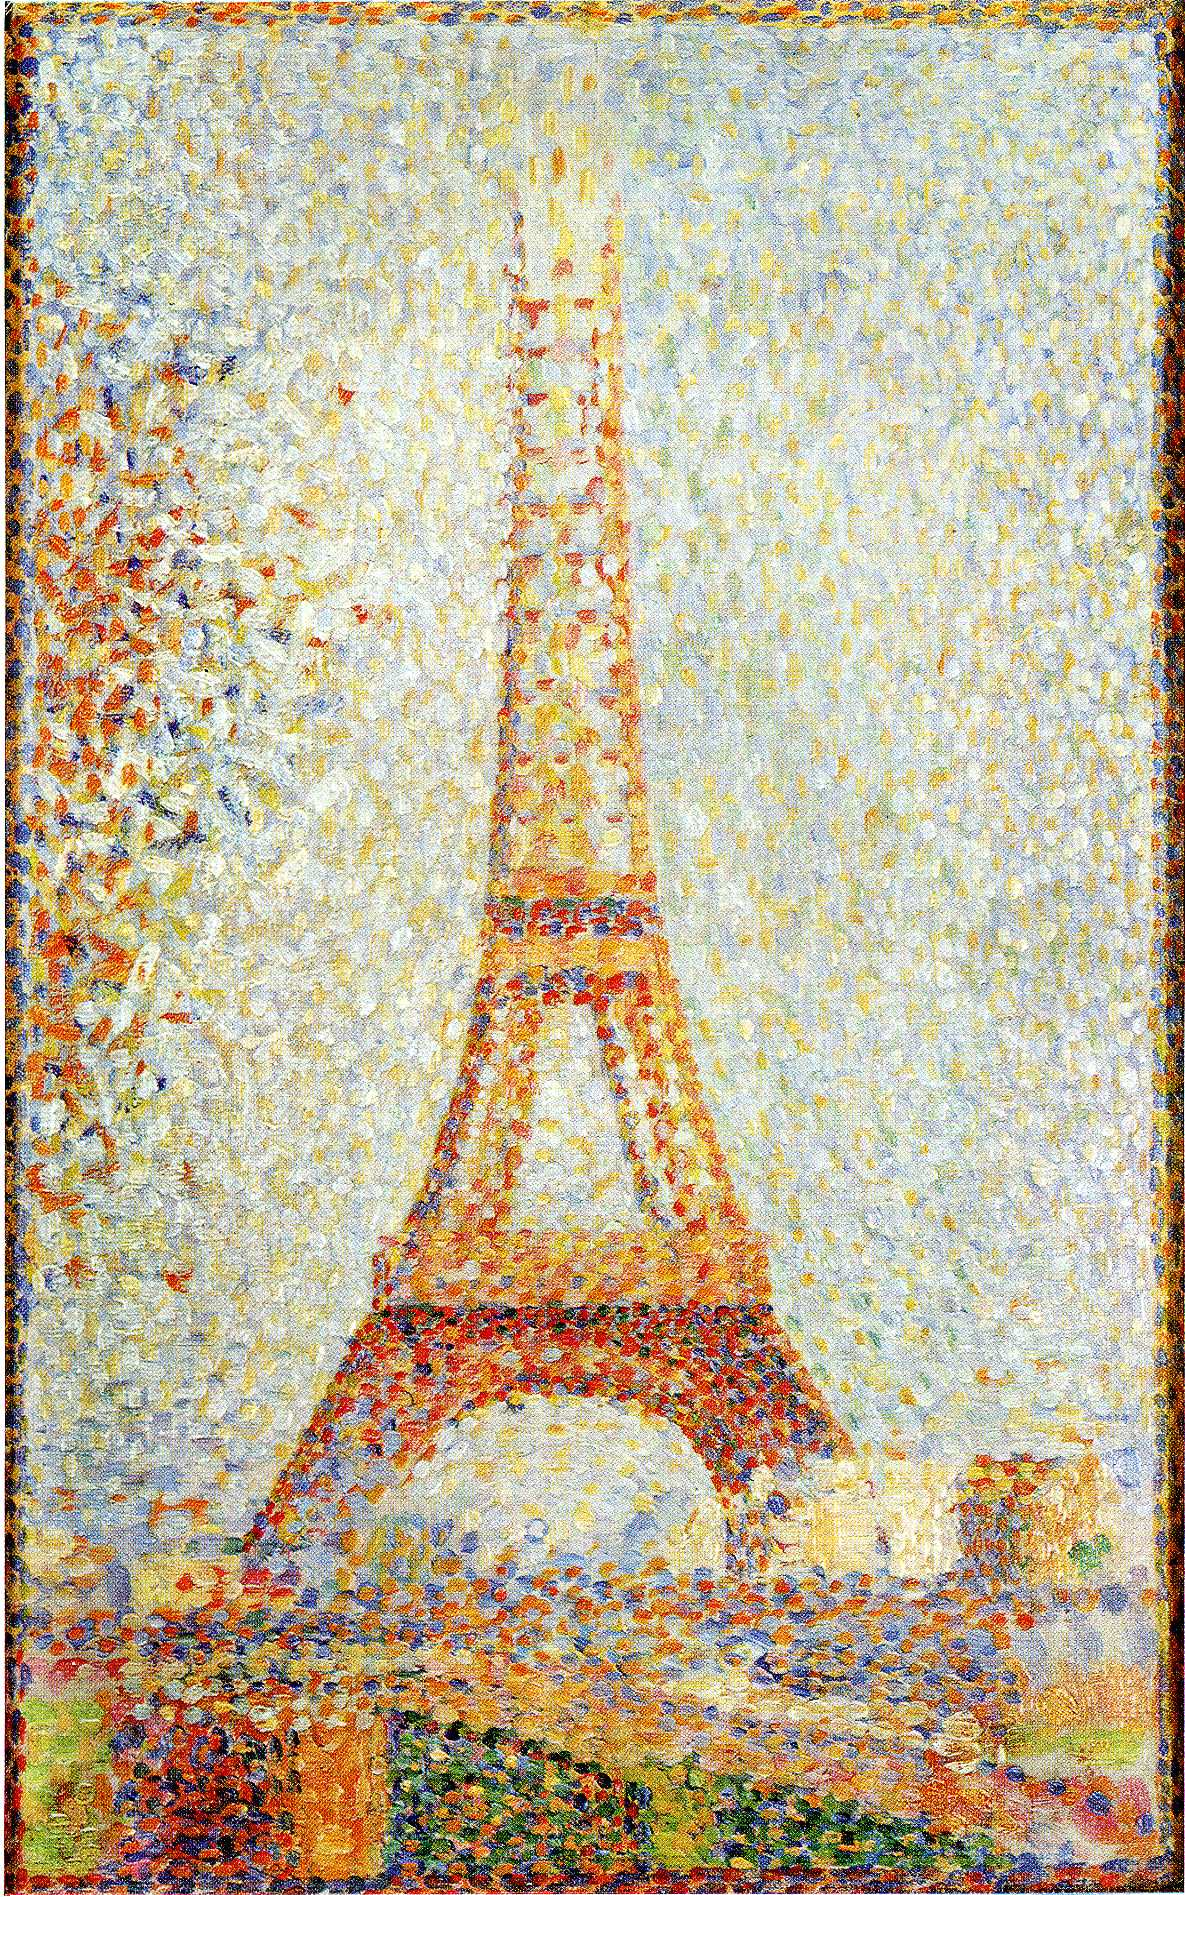 Turnul Eiffel by Georges Seurat - 1889 - 24 x 15 cm 